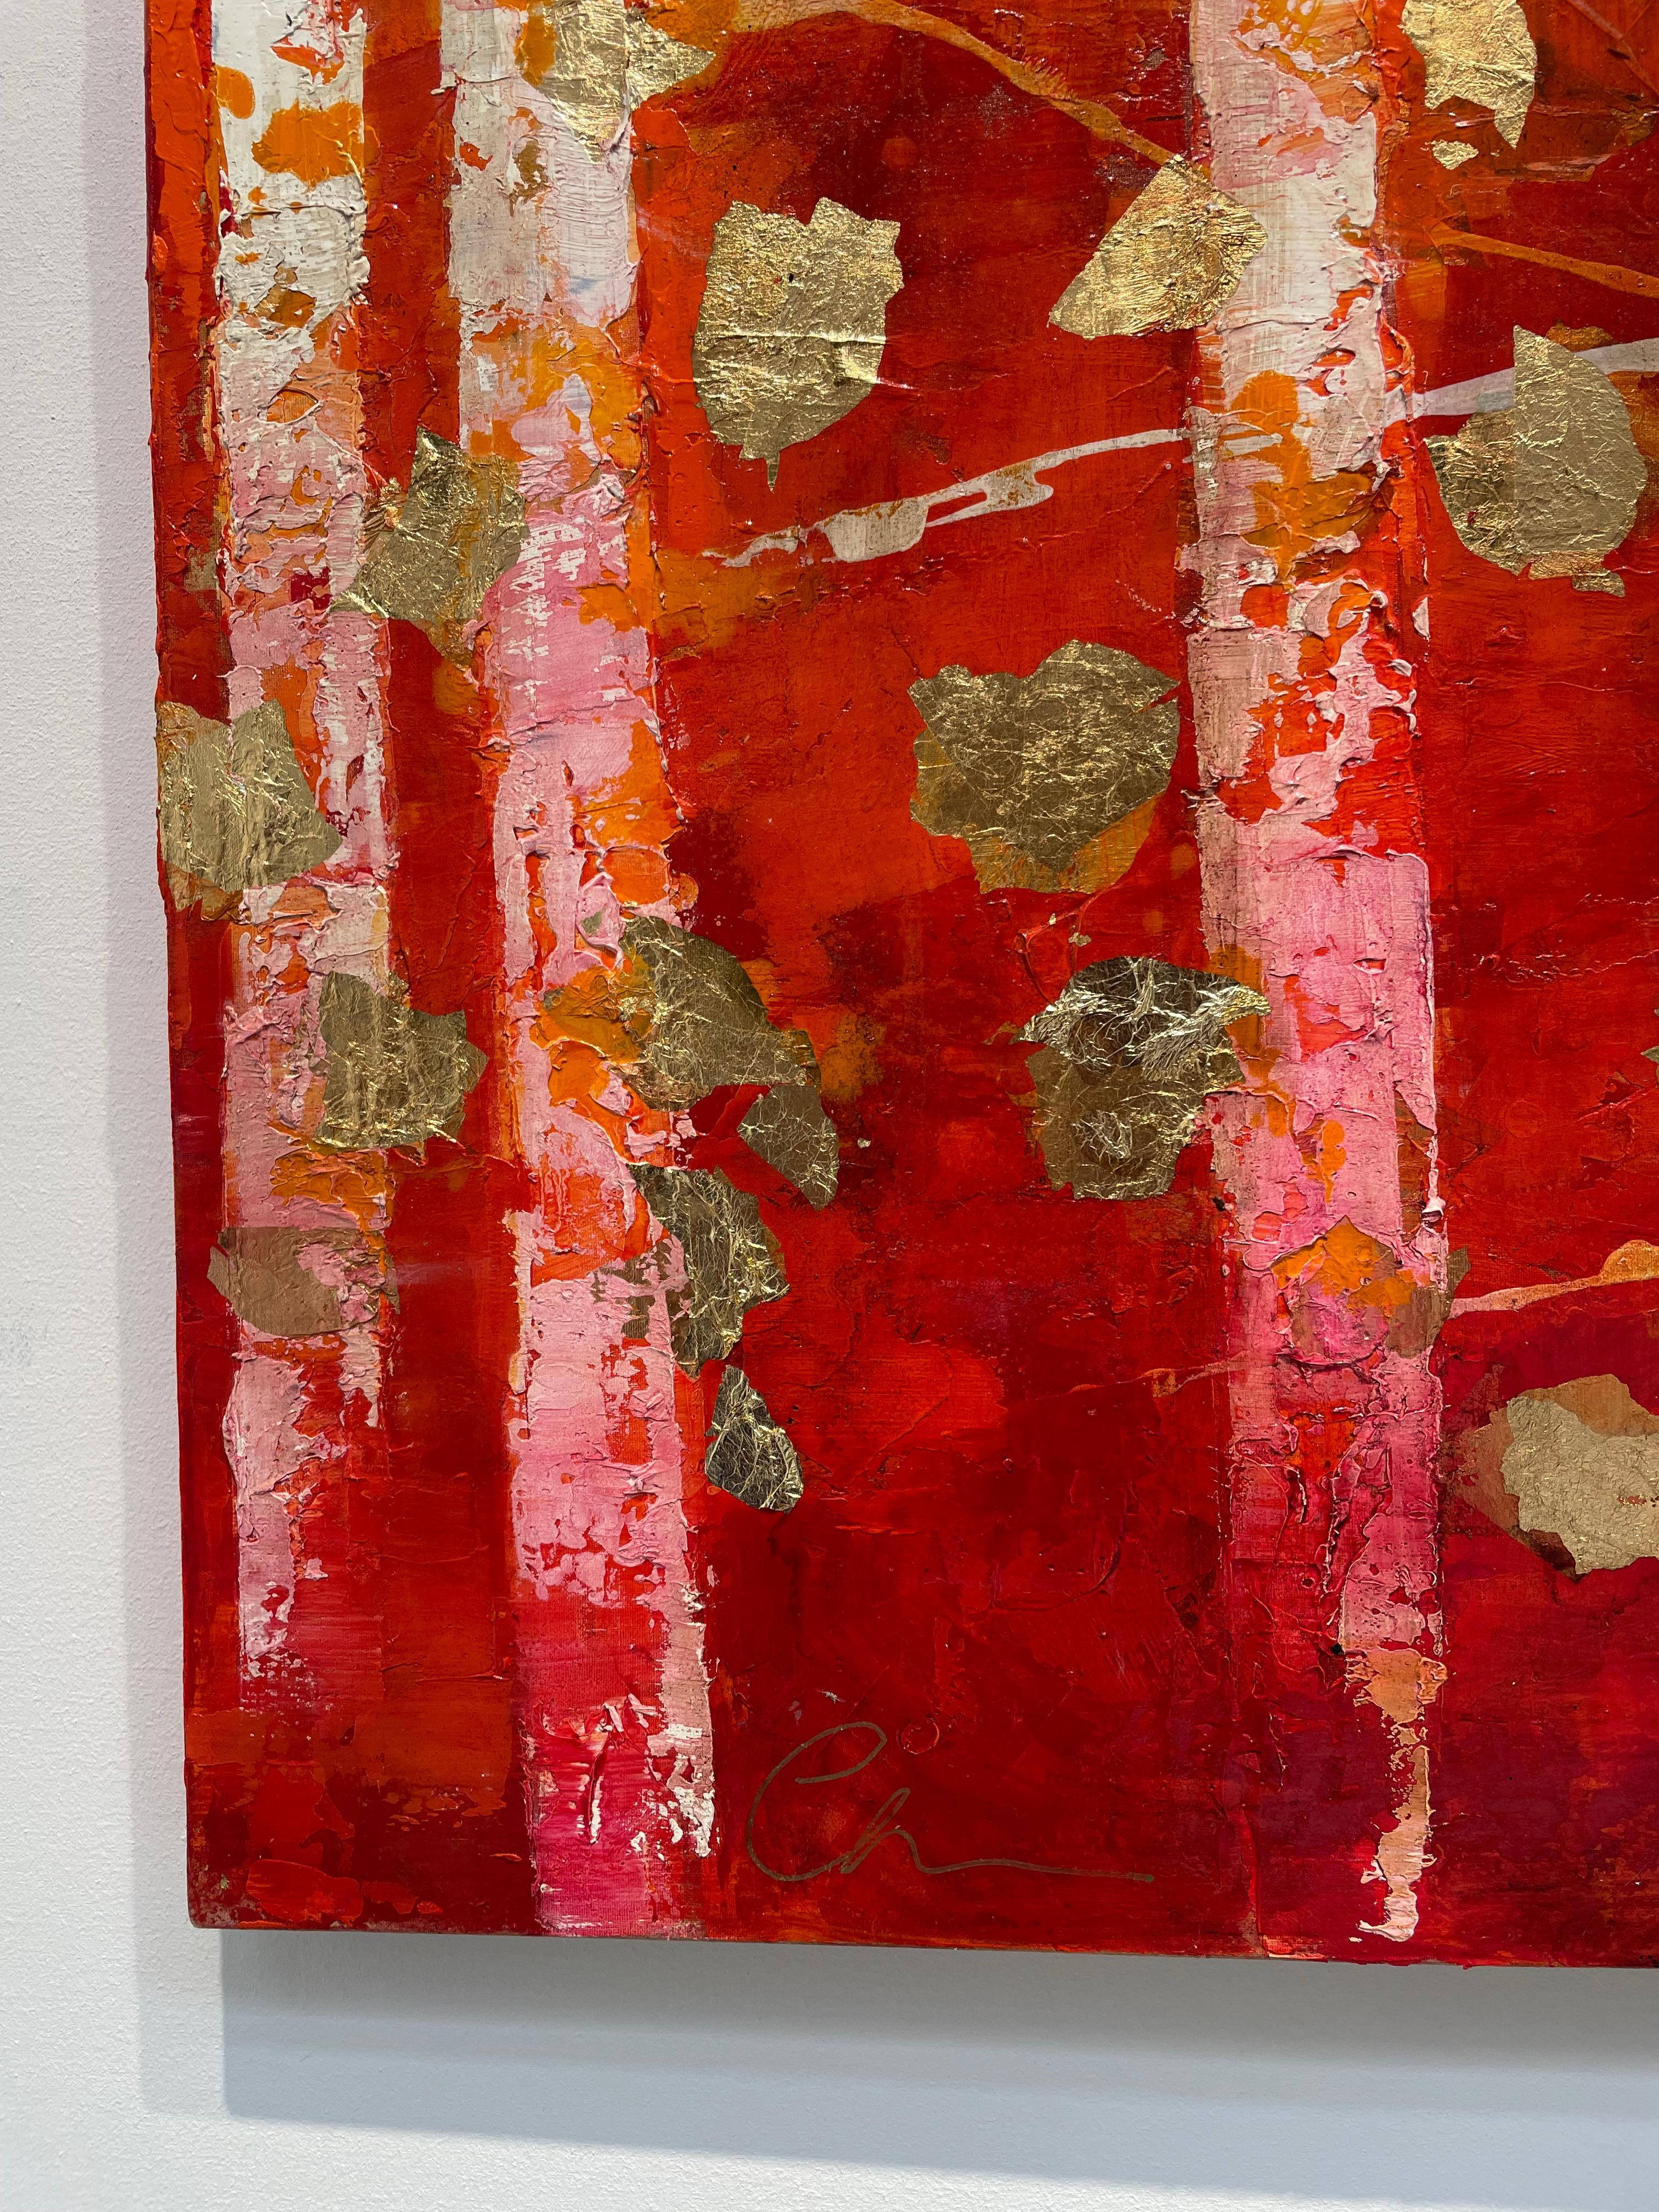 Sommerhölzer – Sommerholz – 21. Jahrhundert, Öl, abstrakt, Nacht, Rot, Blattgold – Painting von Chelsea Davine